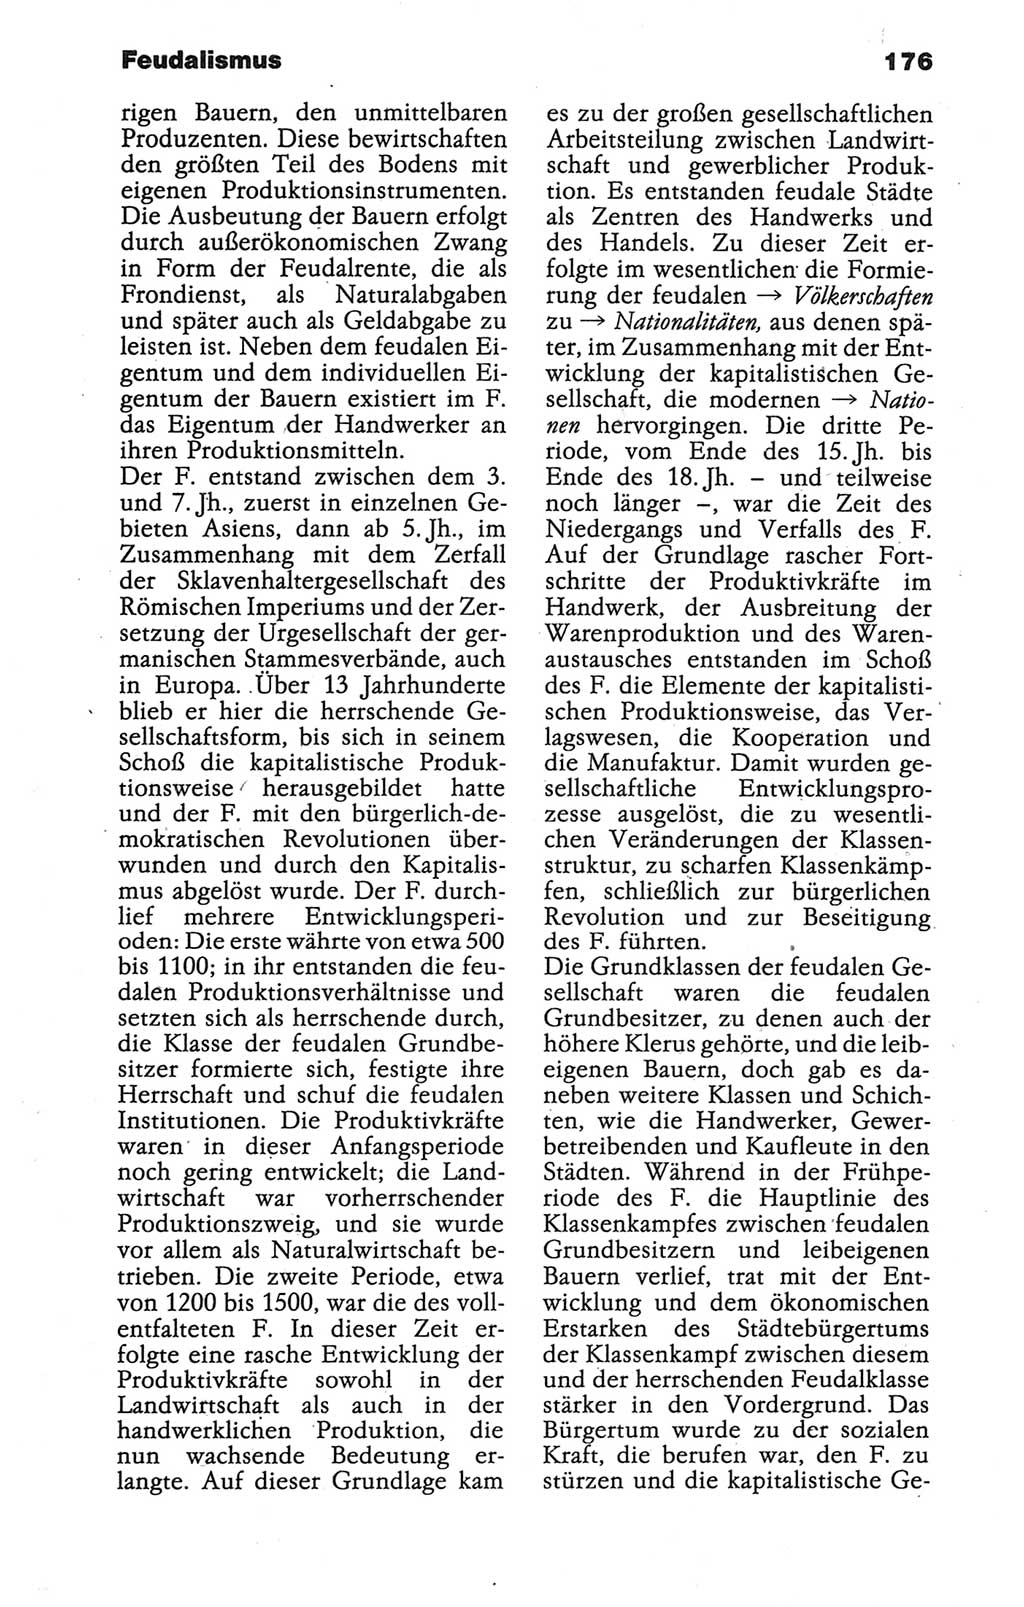 Wörterbuch der marxistisch-leninistischen Philosophie [Deutsche Demokratische Republik (DDR)] 1986, Seite 176 (Wb. ML Phil. DDR 1986, S. 176)